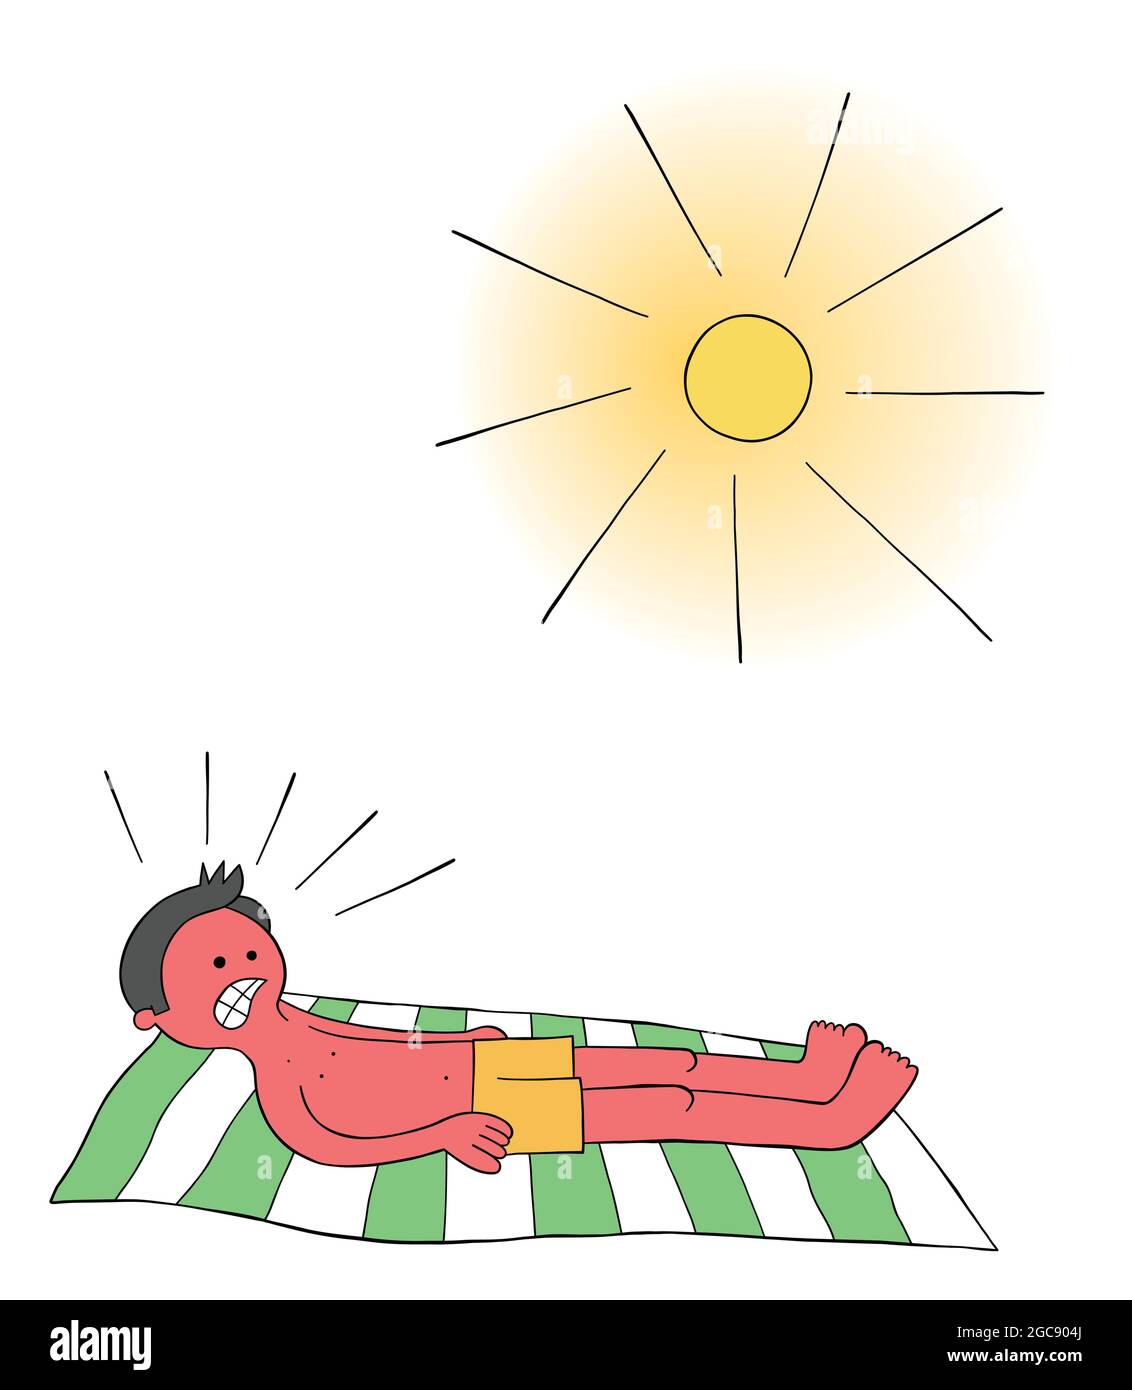 Homme de dessin animé qui prend le soleil sur la plage pendant des heures et quand il se réveille tout son corps est rouge brûlé illustration vectorielle. Contours colorés et noirs. Illustration de Vecteur